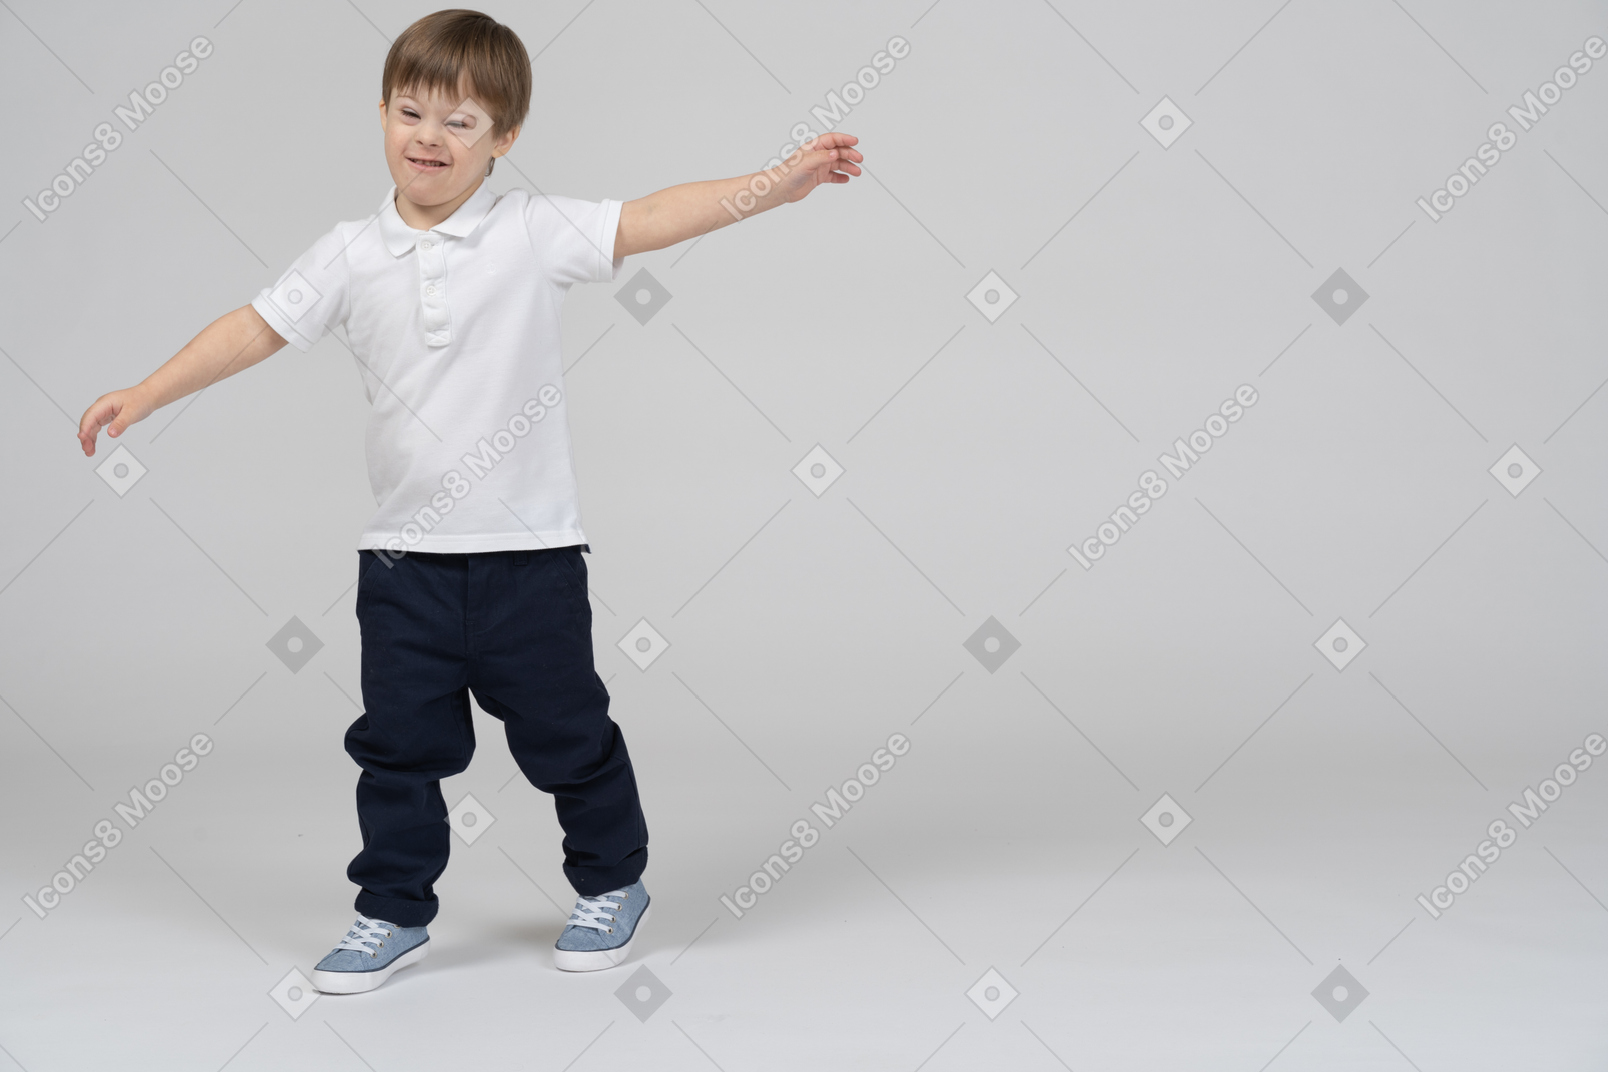 Vista frontal de un niño haciendo muecas con las manos a los lados